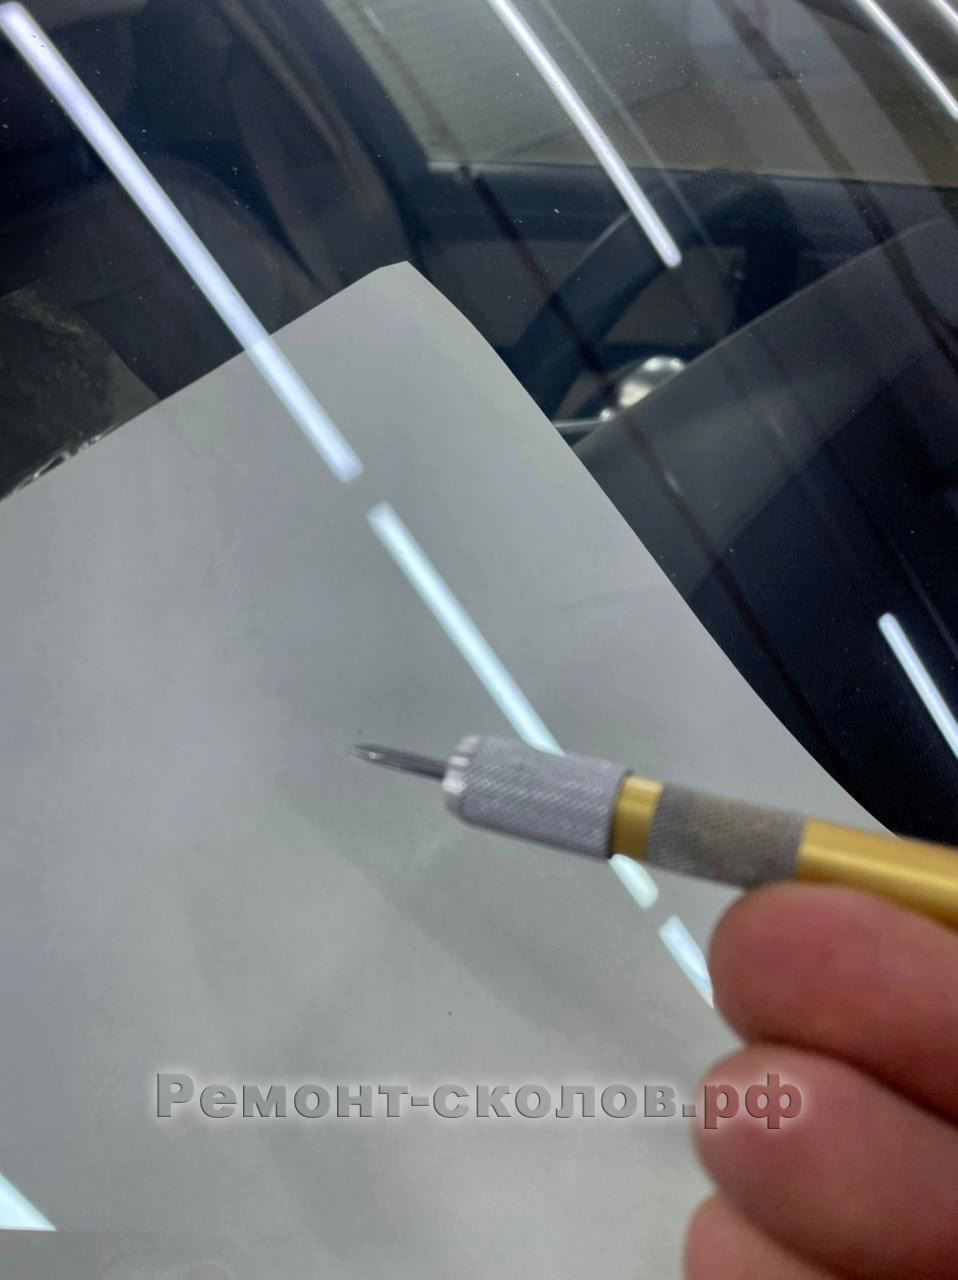 Mercedes Maybach ремонт скола на автостекле в ЮЗАО